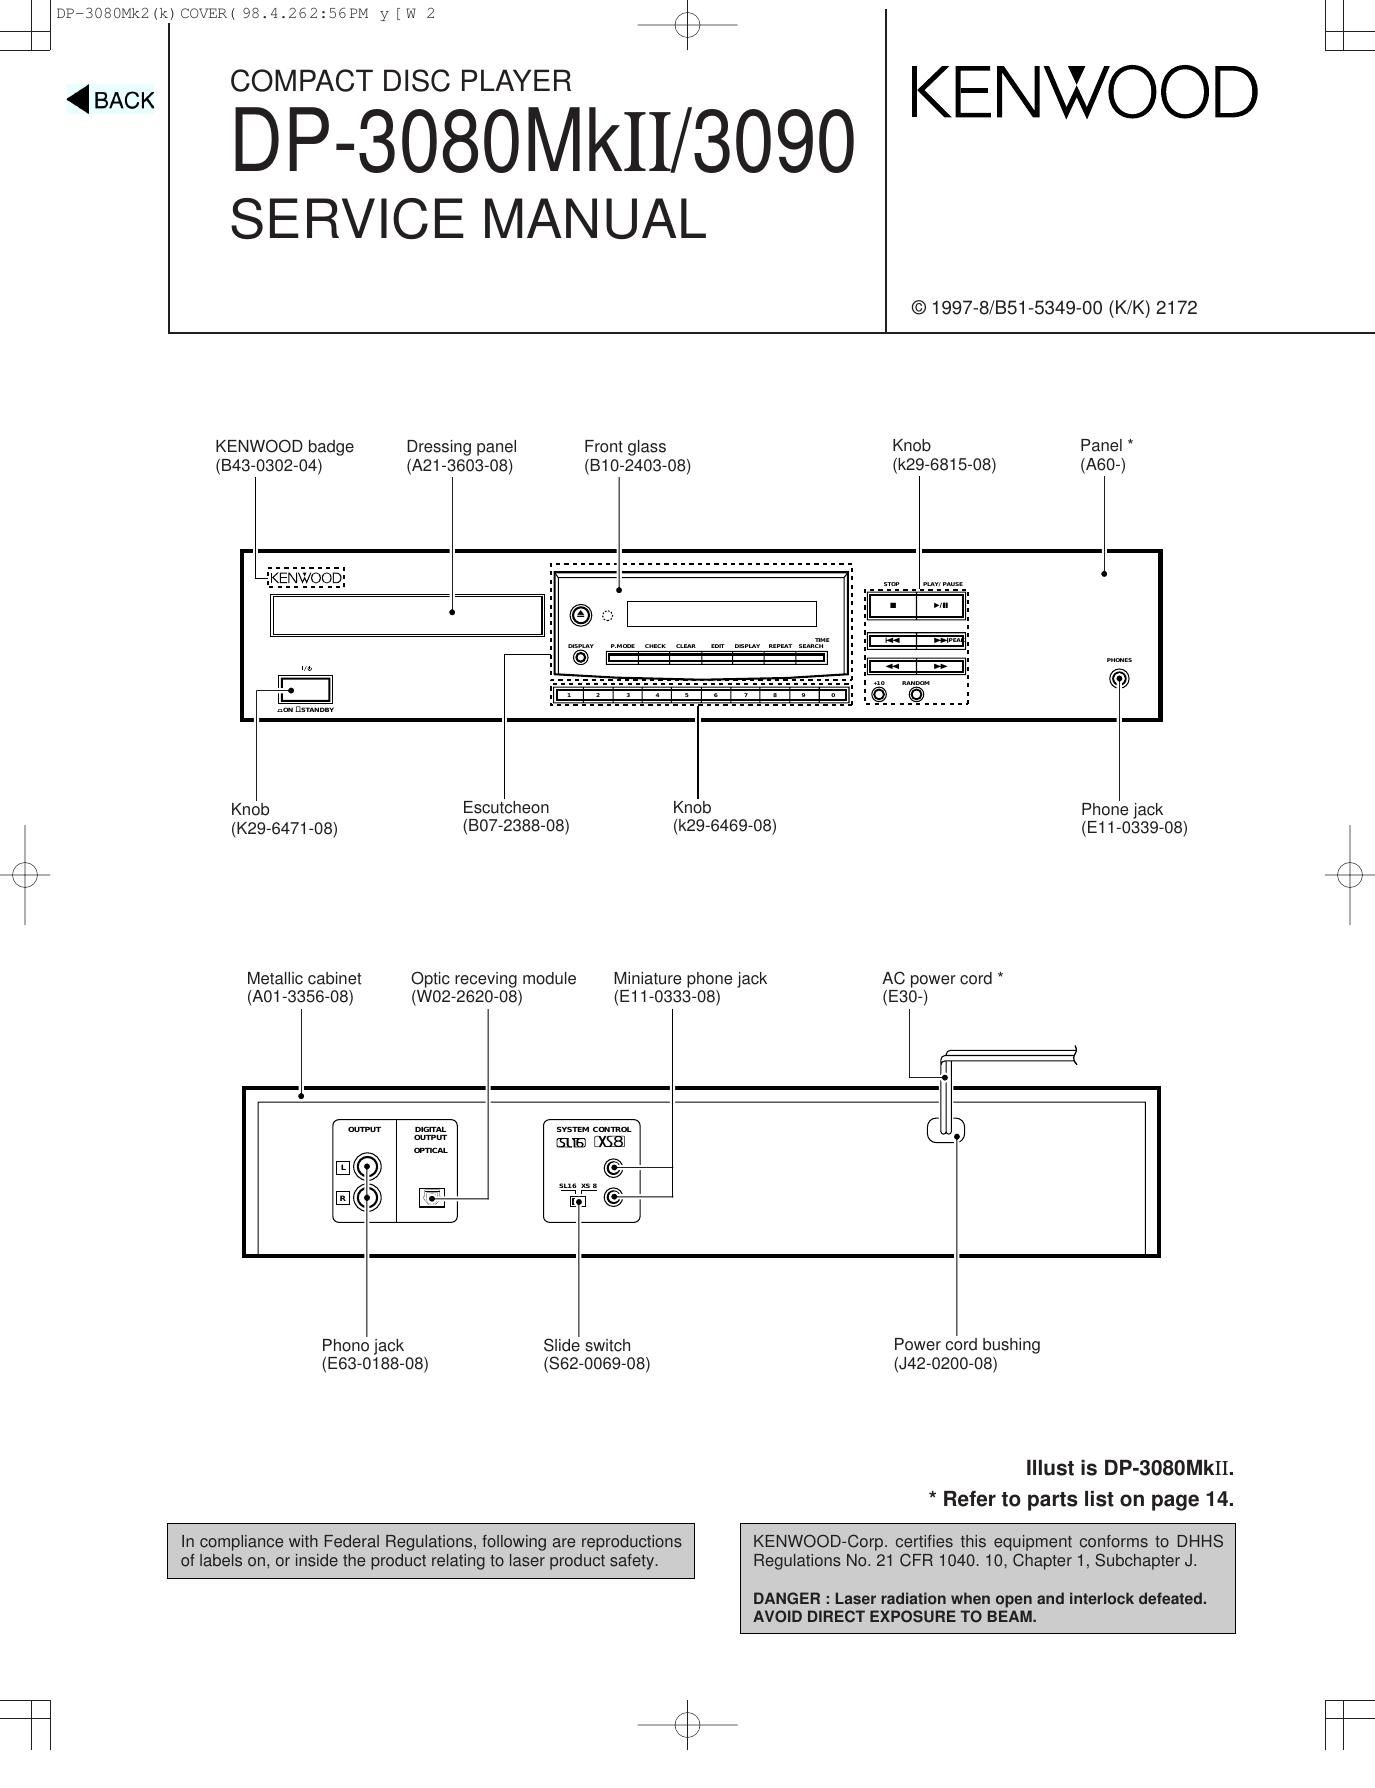 Kenwood DP 3080 Mk2 Service Manual